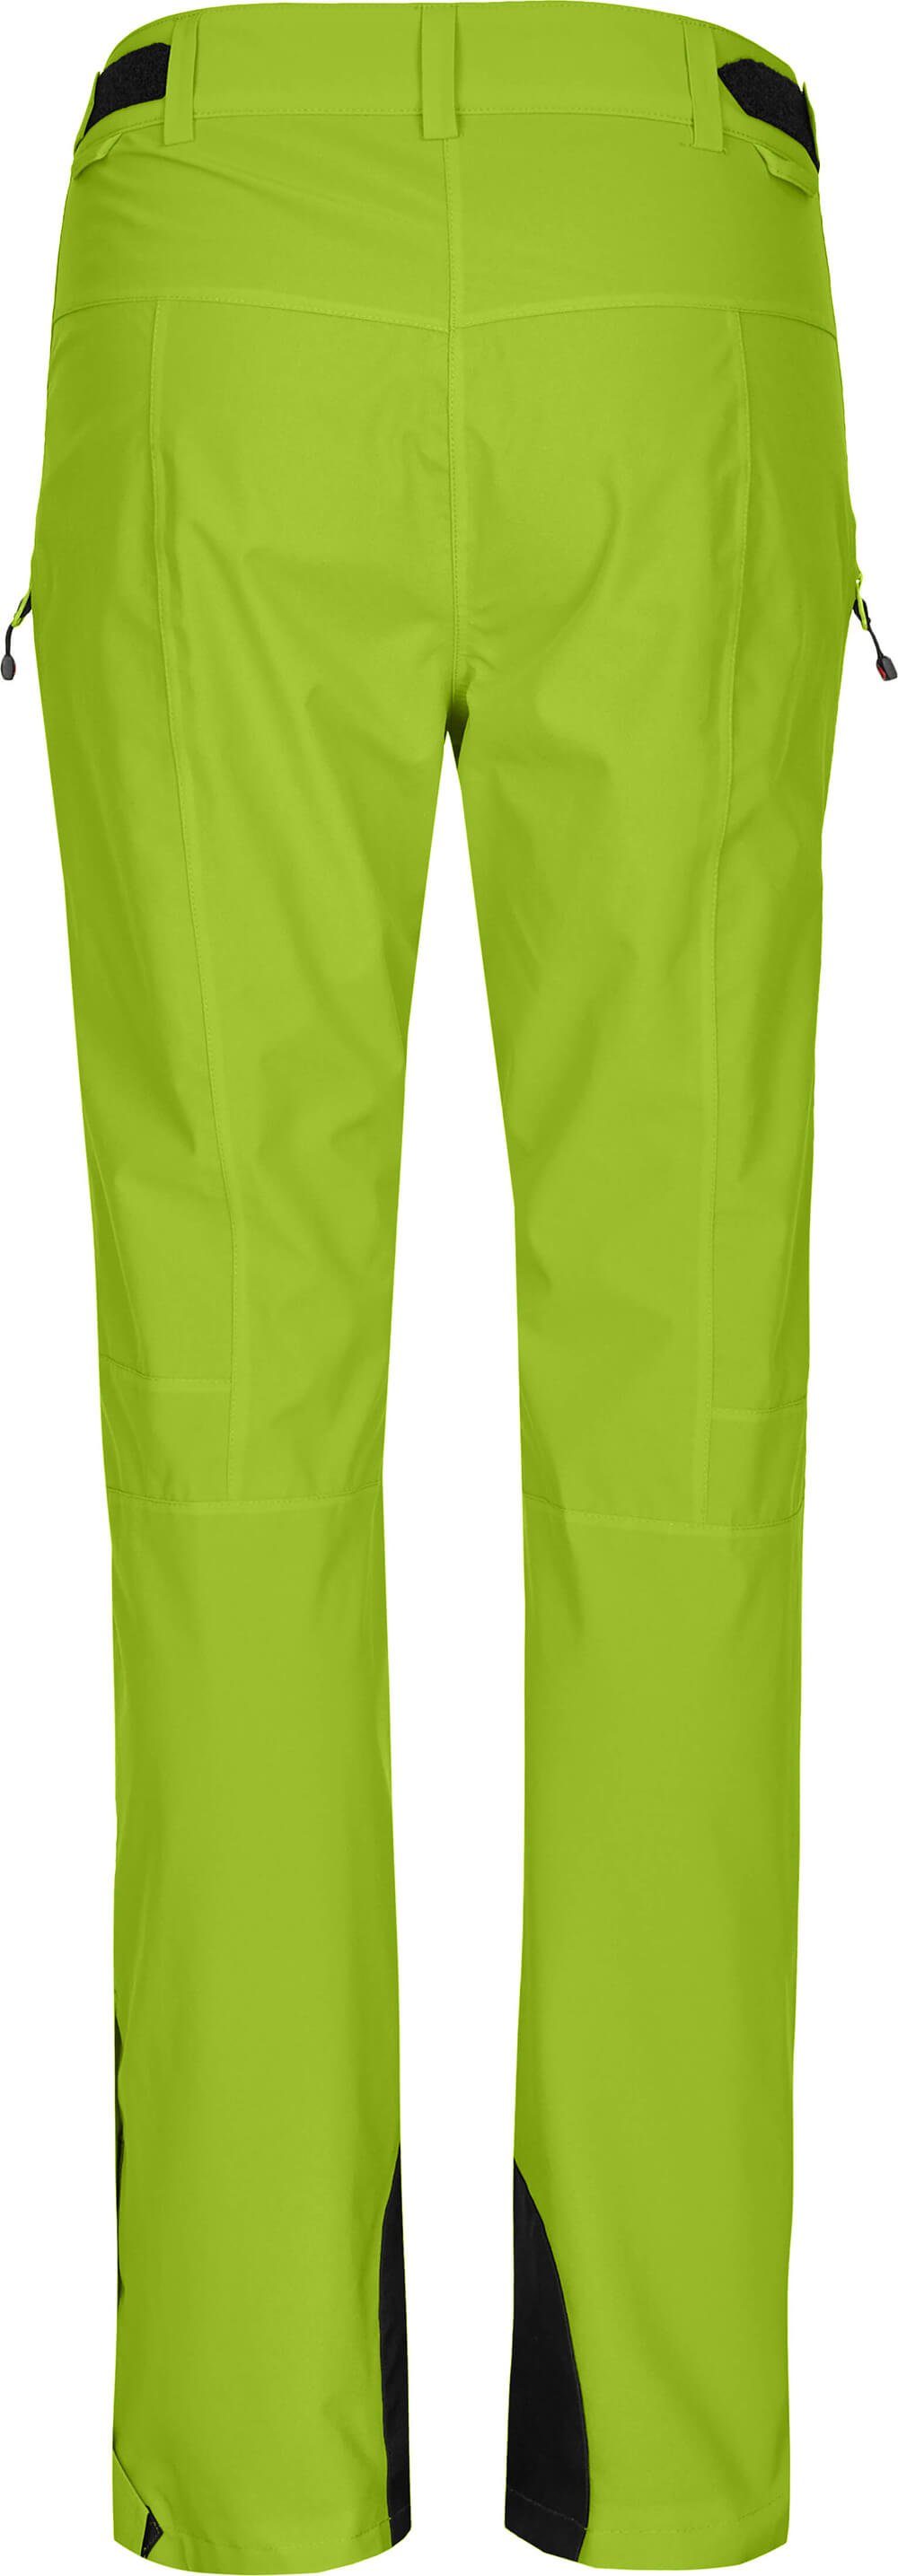 Bergson Skihose ICE Skihose, lime Slim Wassersäule, grün light unwattiert, Damen mm Normalgrößen, 20000